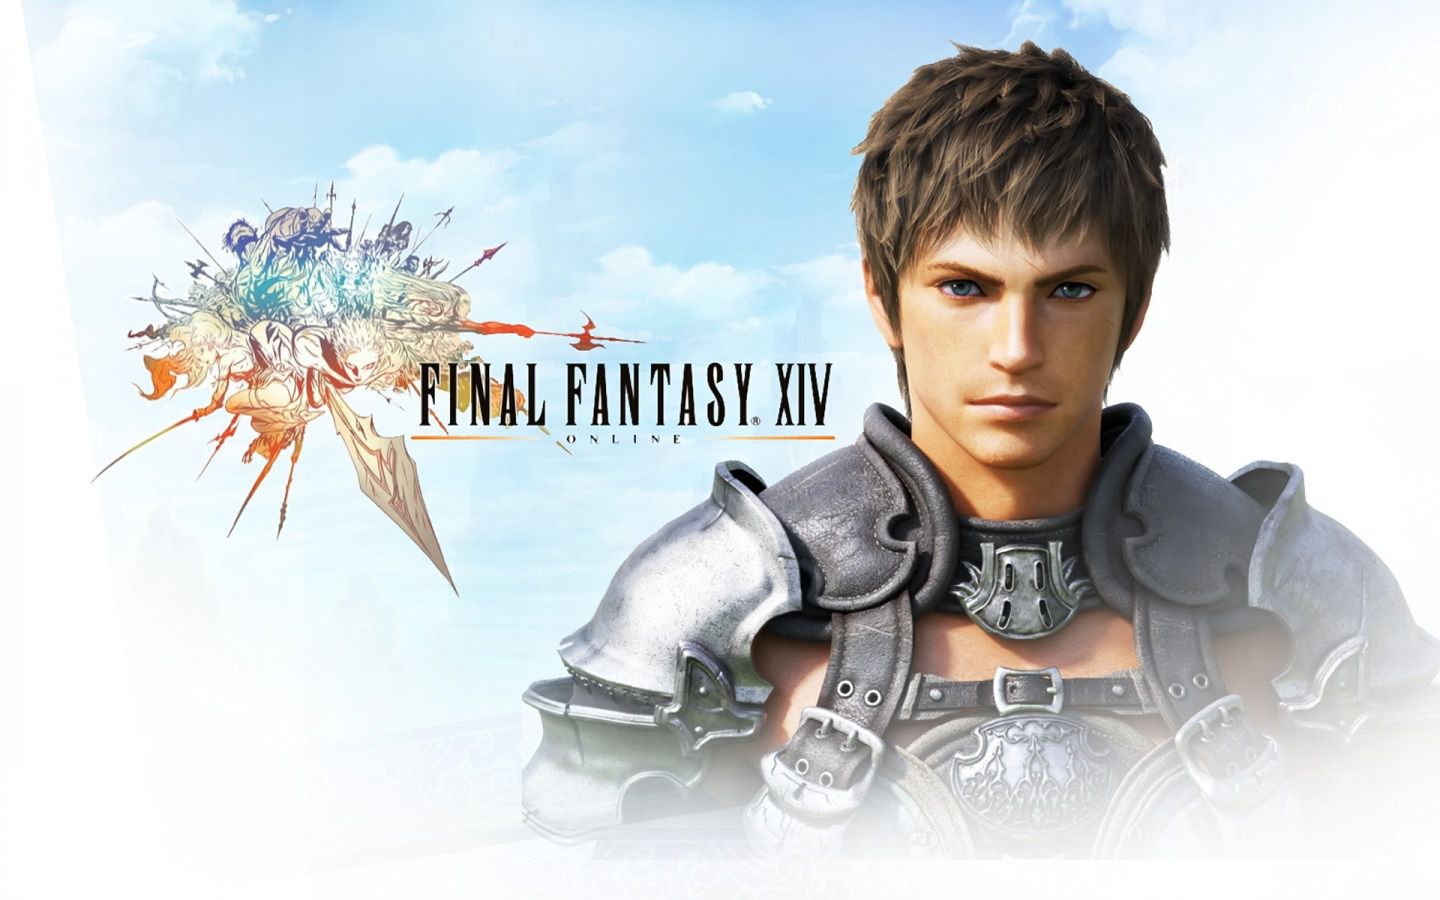 Beta von Final Fantasy XIV wird für alle PS4 Besitzer zugänglich